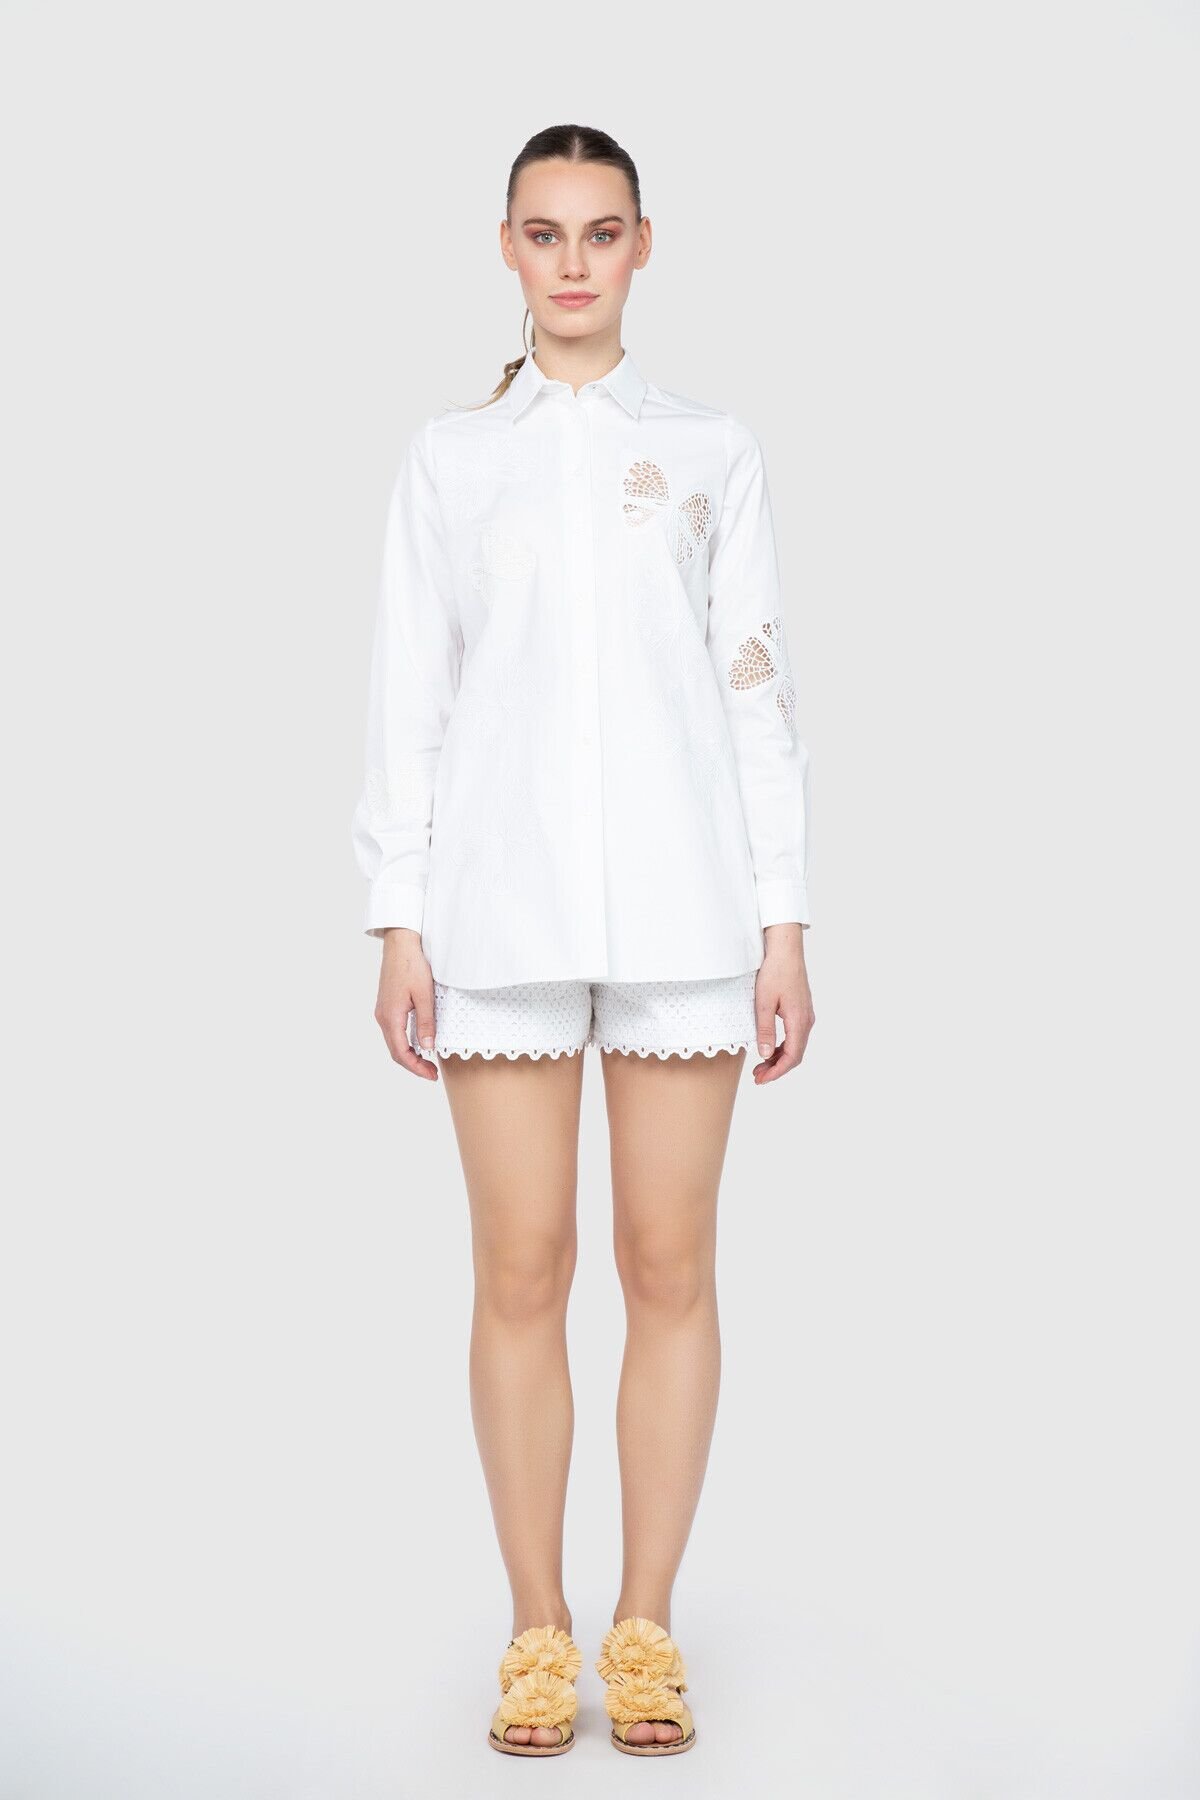 Dice Kayek Transparan Nakış Detaylı Beyaz Tasarım Gömlek